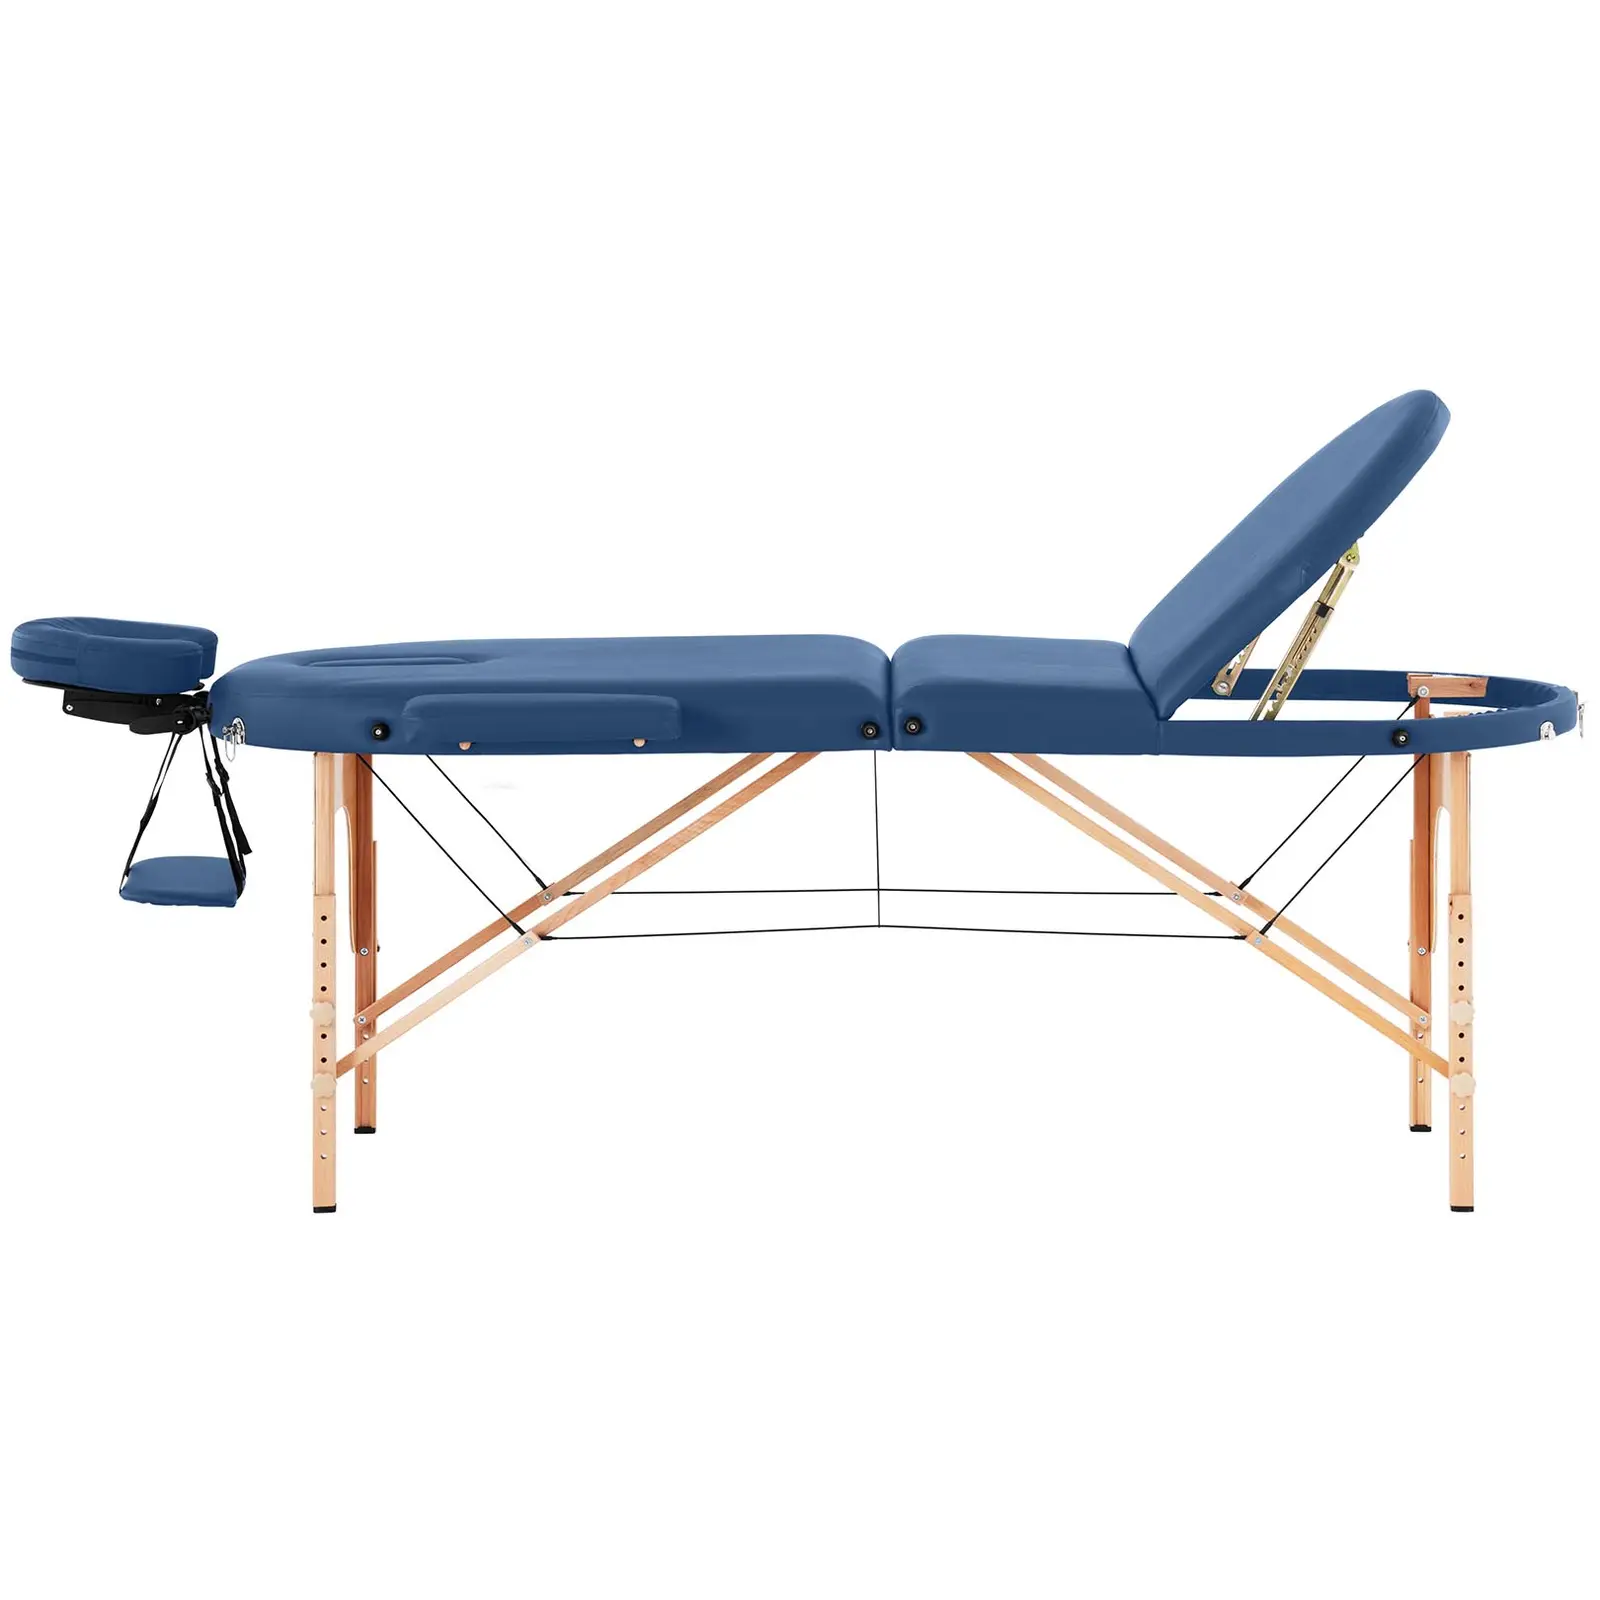 Cama de massagem - 185-211 x 70-88 x 63-85 cm - 227 kg - Azul